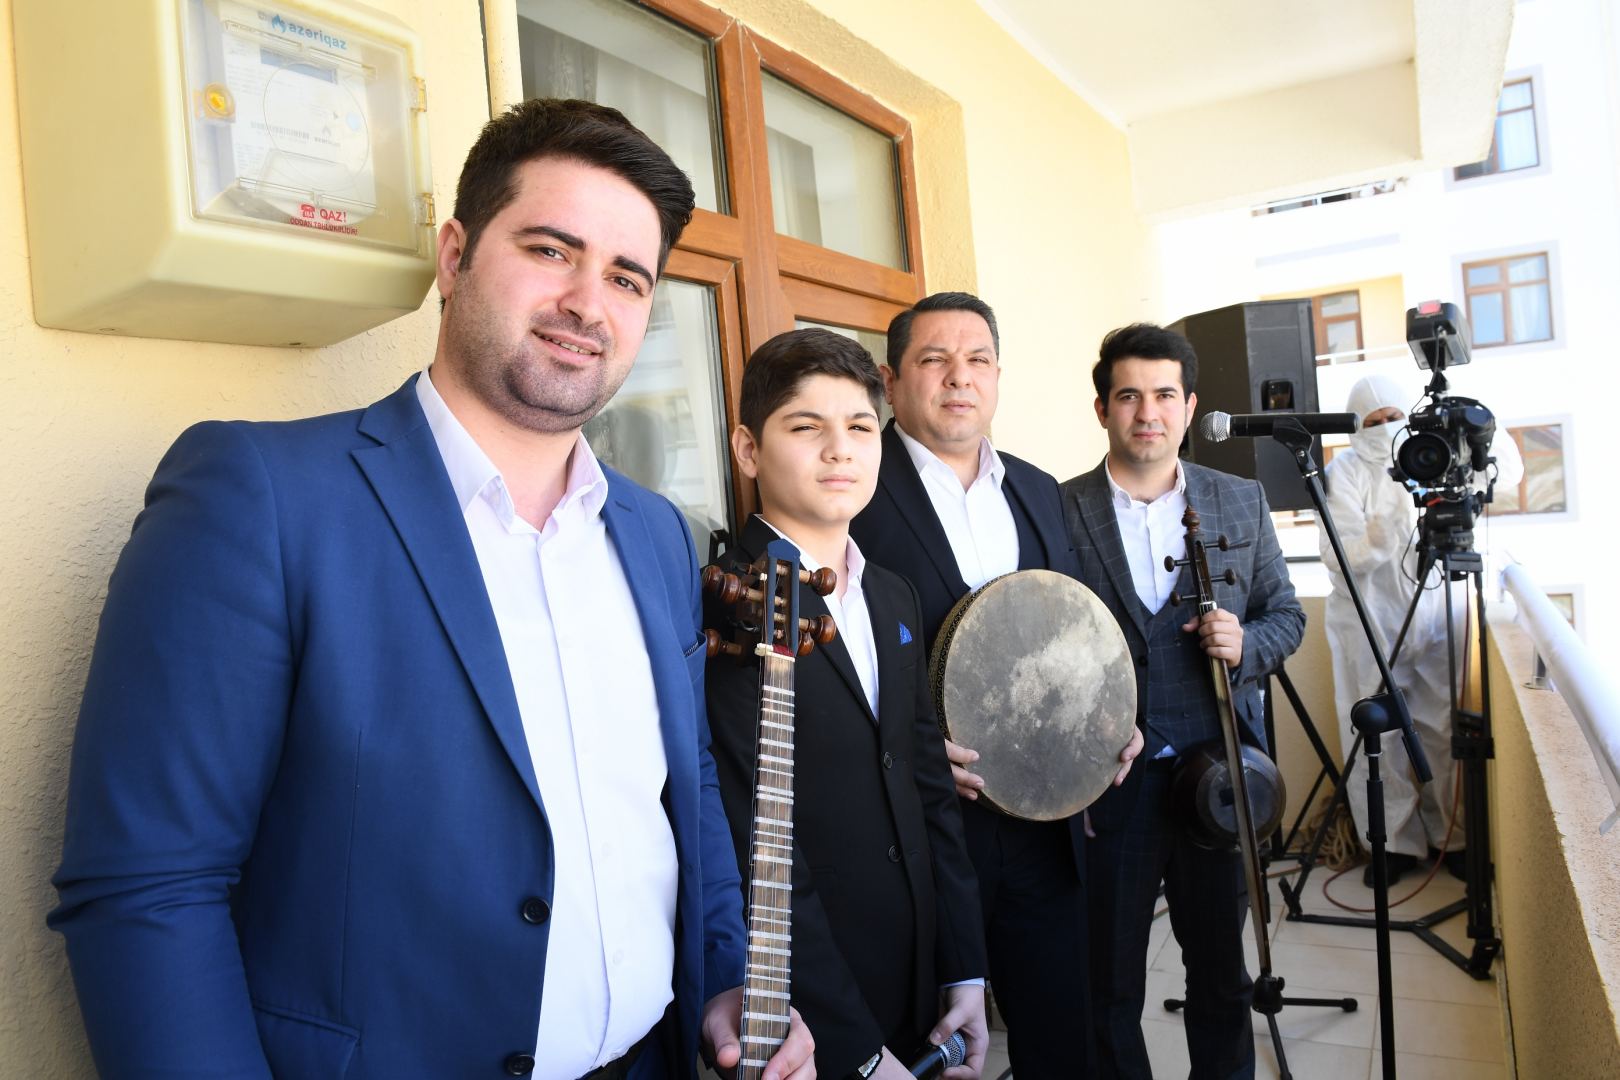 Məcburi köçkünlər üçün "Eyvana çıx" layihəsi çərçivəsində canlı muğam konsert proqramı təşkil edilib (FOTO)